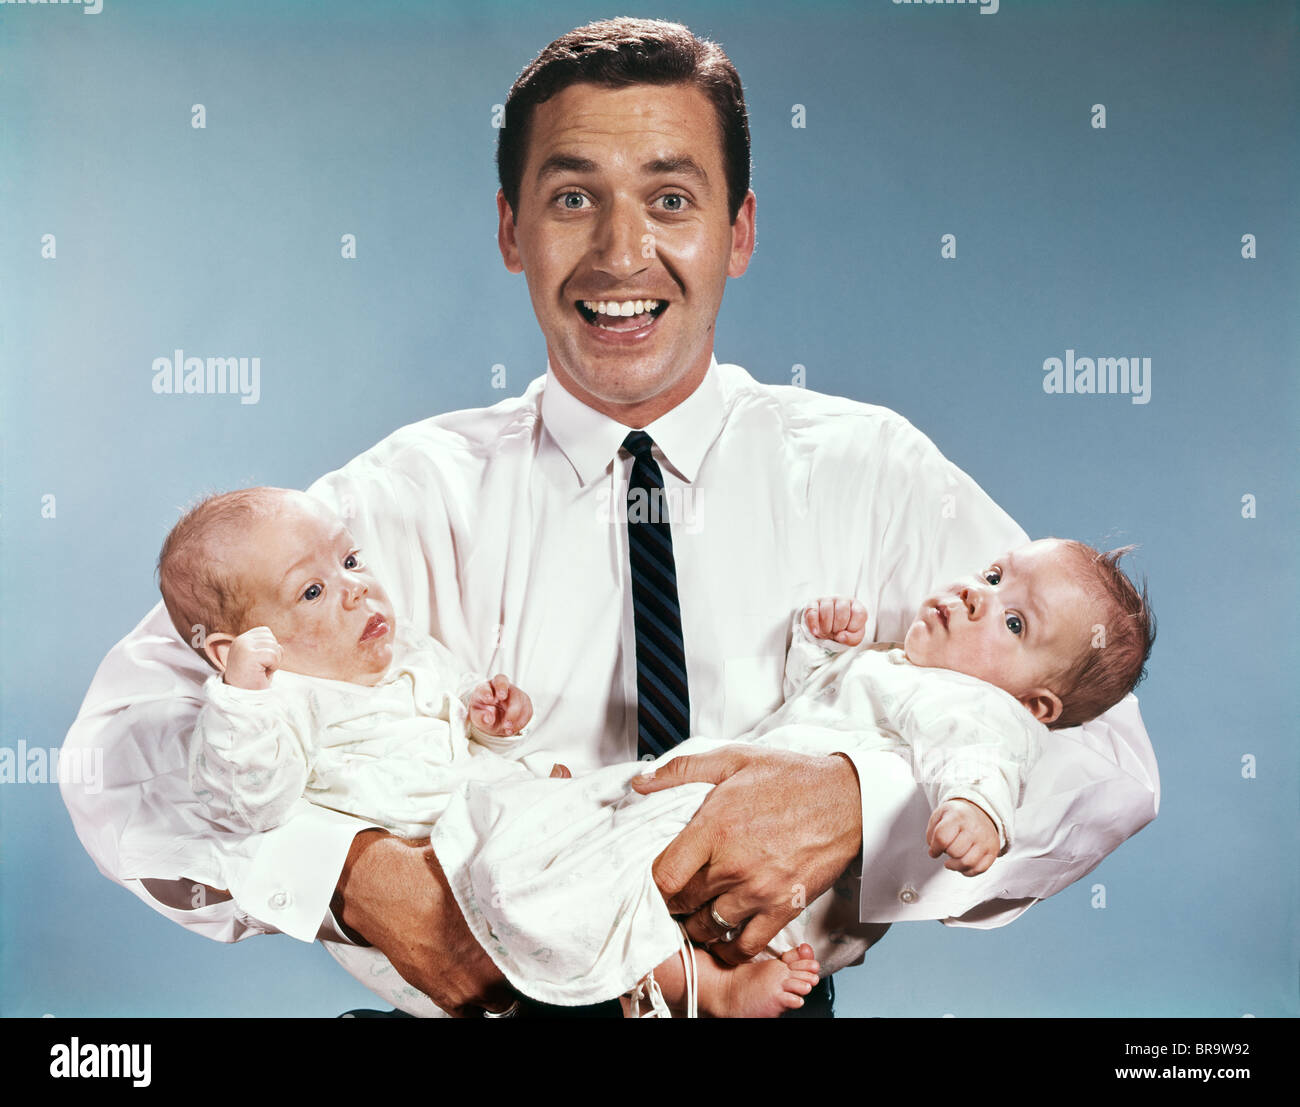 1960 hombre padre sonriente mirando a la cámara la celebración de dos bebés lactantes Foto de stock